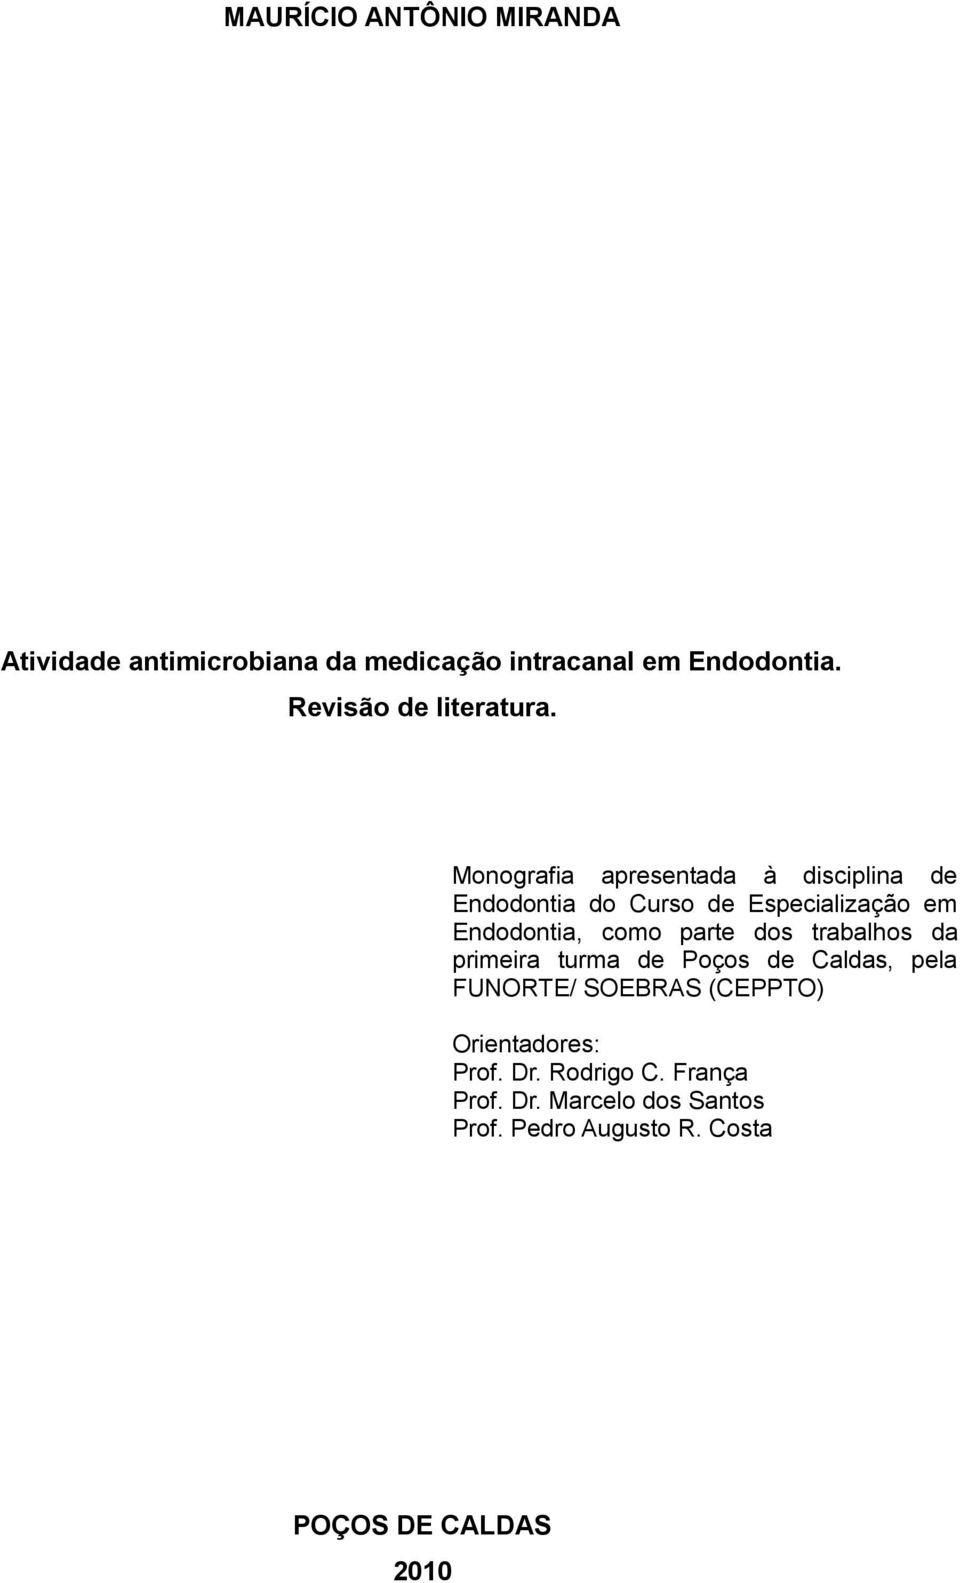 Monografia apresentada à disciplina de Endodontia do Curso de Especialização em Endodontia, como parte